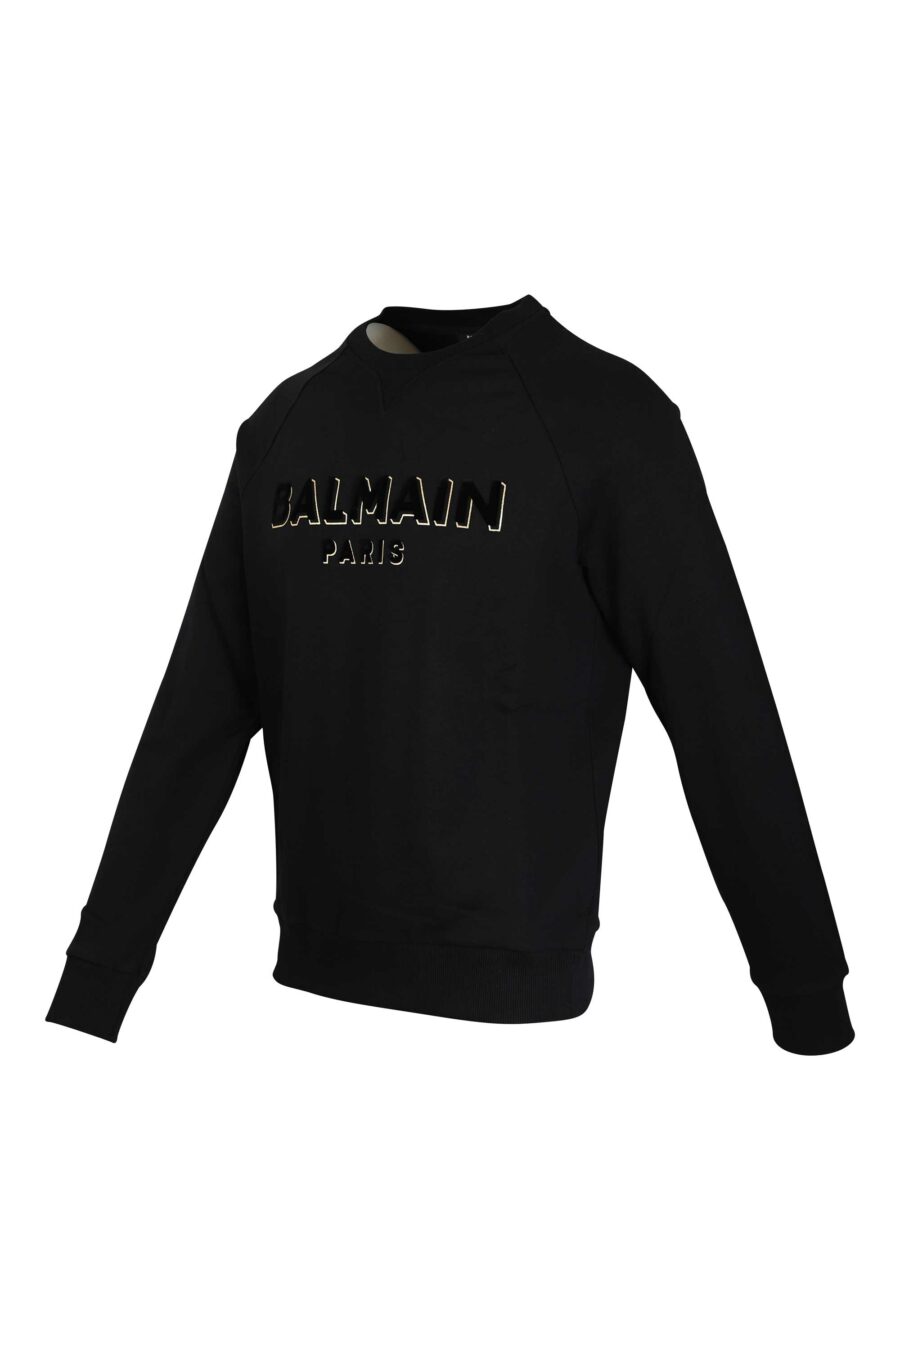 Schwarzes Sweatshirt mit schwarzem Samt Maxilogue mit Gold - 3615884199558 2